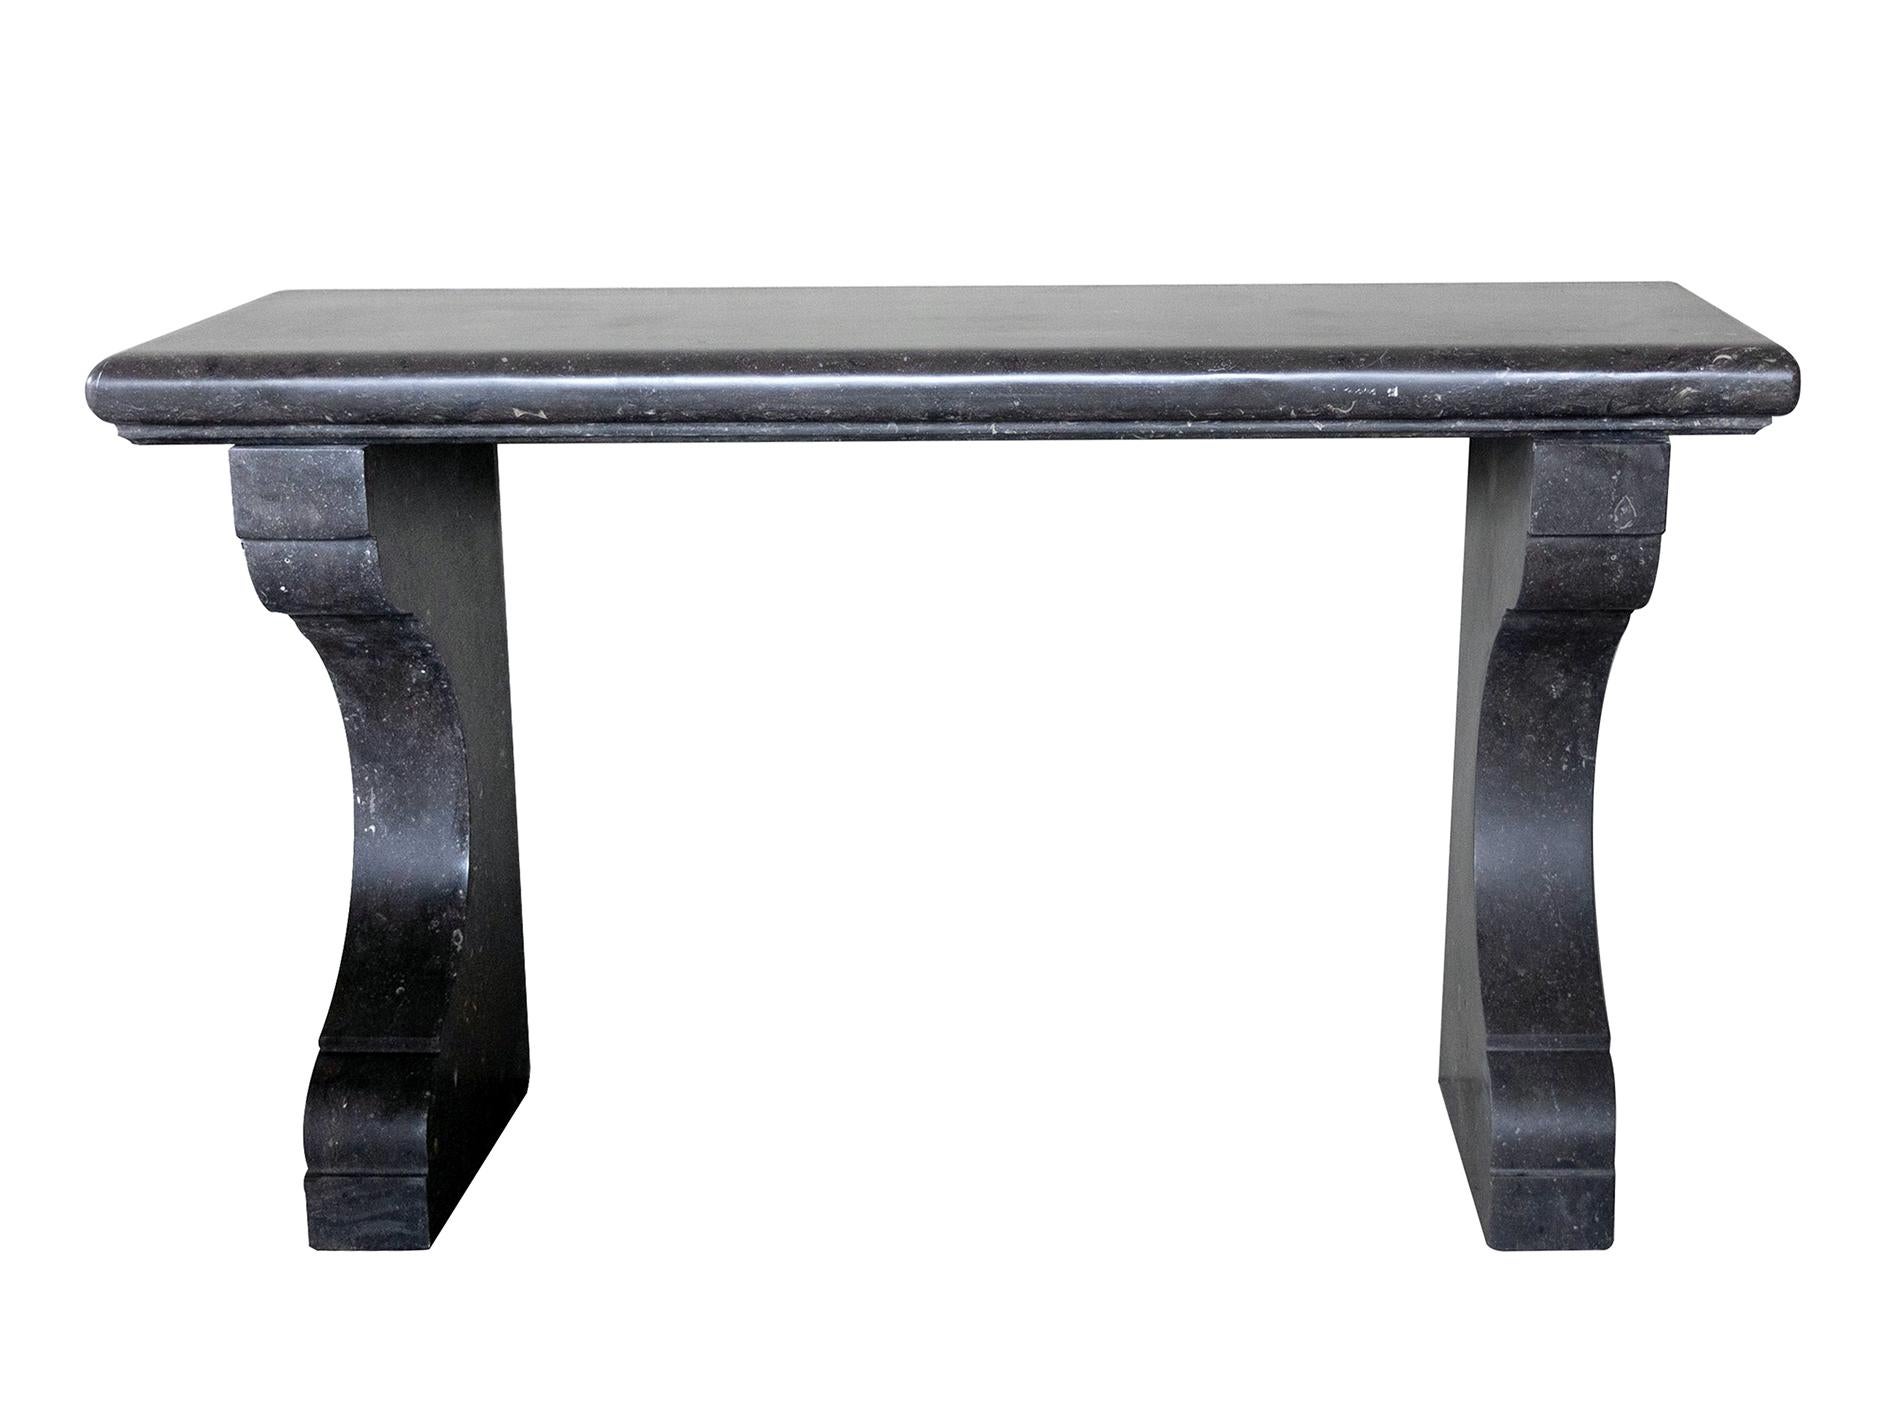 Fabriquée en pierre bleue belge avec une finition adoucie et incrustée de fossiles, la table console est composée d'un épais plateau rectangulaire avec un bord en ogee, le tout reposant sur des supports concaves à volutes. Neuve avec seulement une